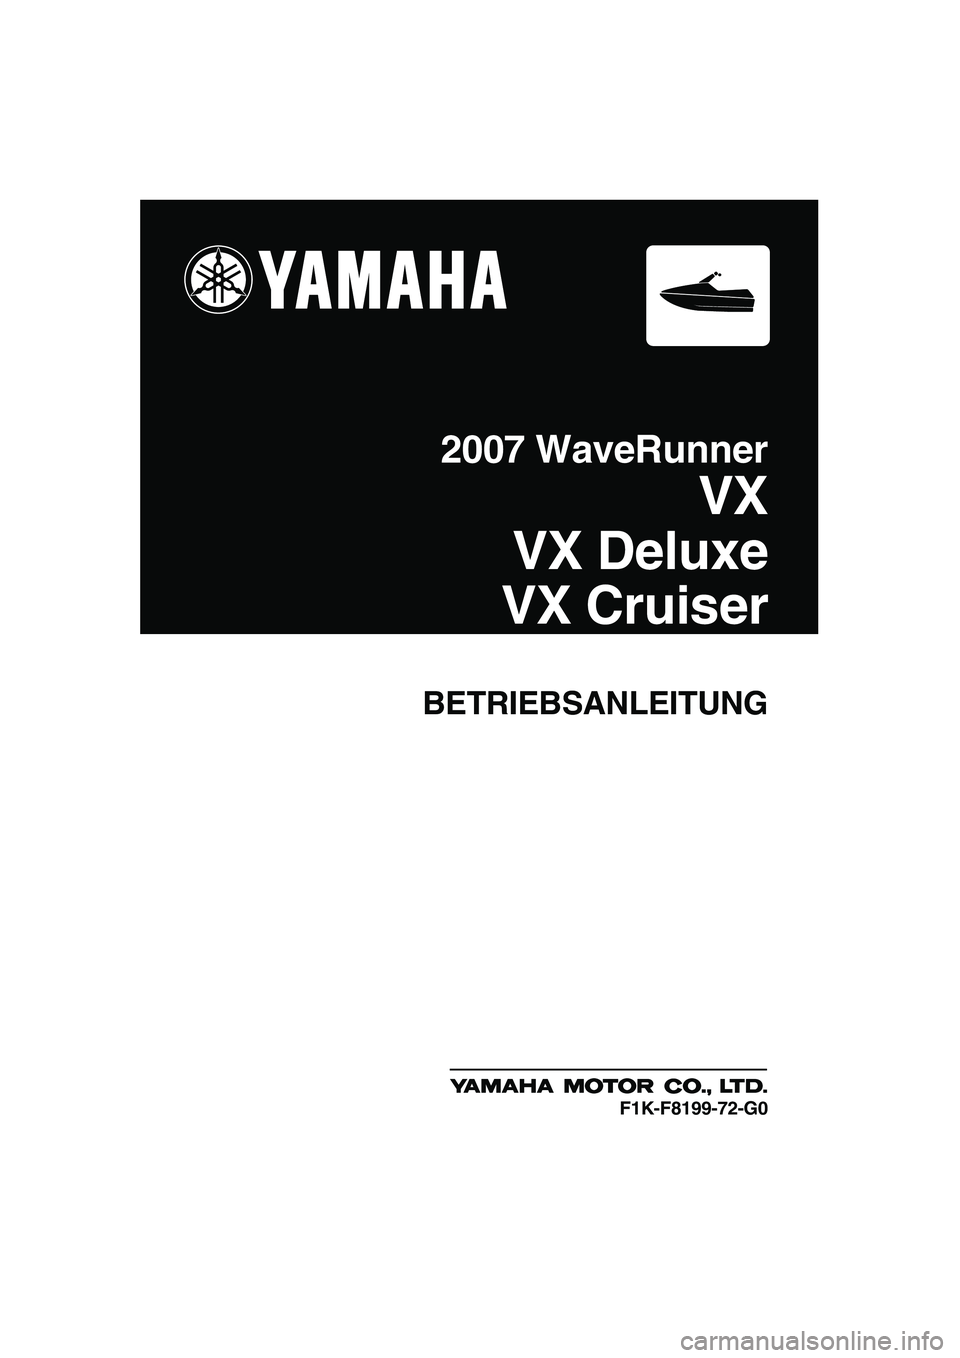 YAMAHA VX 2007  Betriebsanleitungen (in German) BETRIEBSANLEITUNG
2007 WaveRunner
VX
VX Deluxe
VX Cruiser
F1K-F8199-72-G0
UF1K72G0.book  Page 1  Thursday, August 3, 2006  10:08 AM 